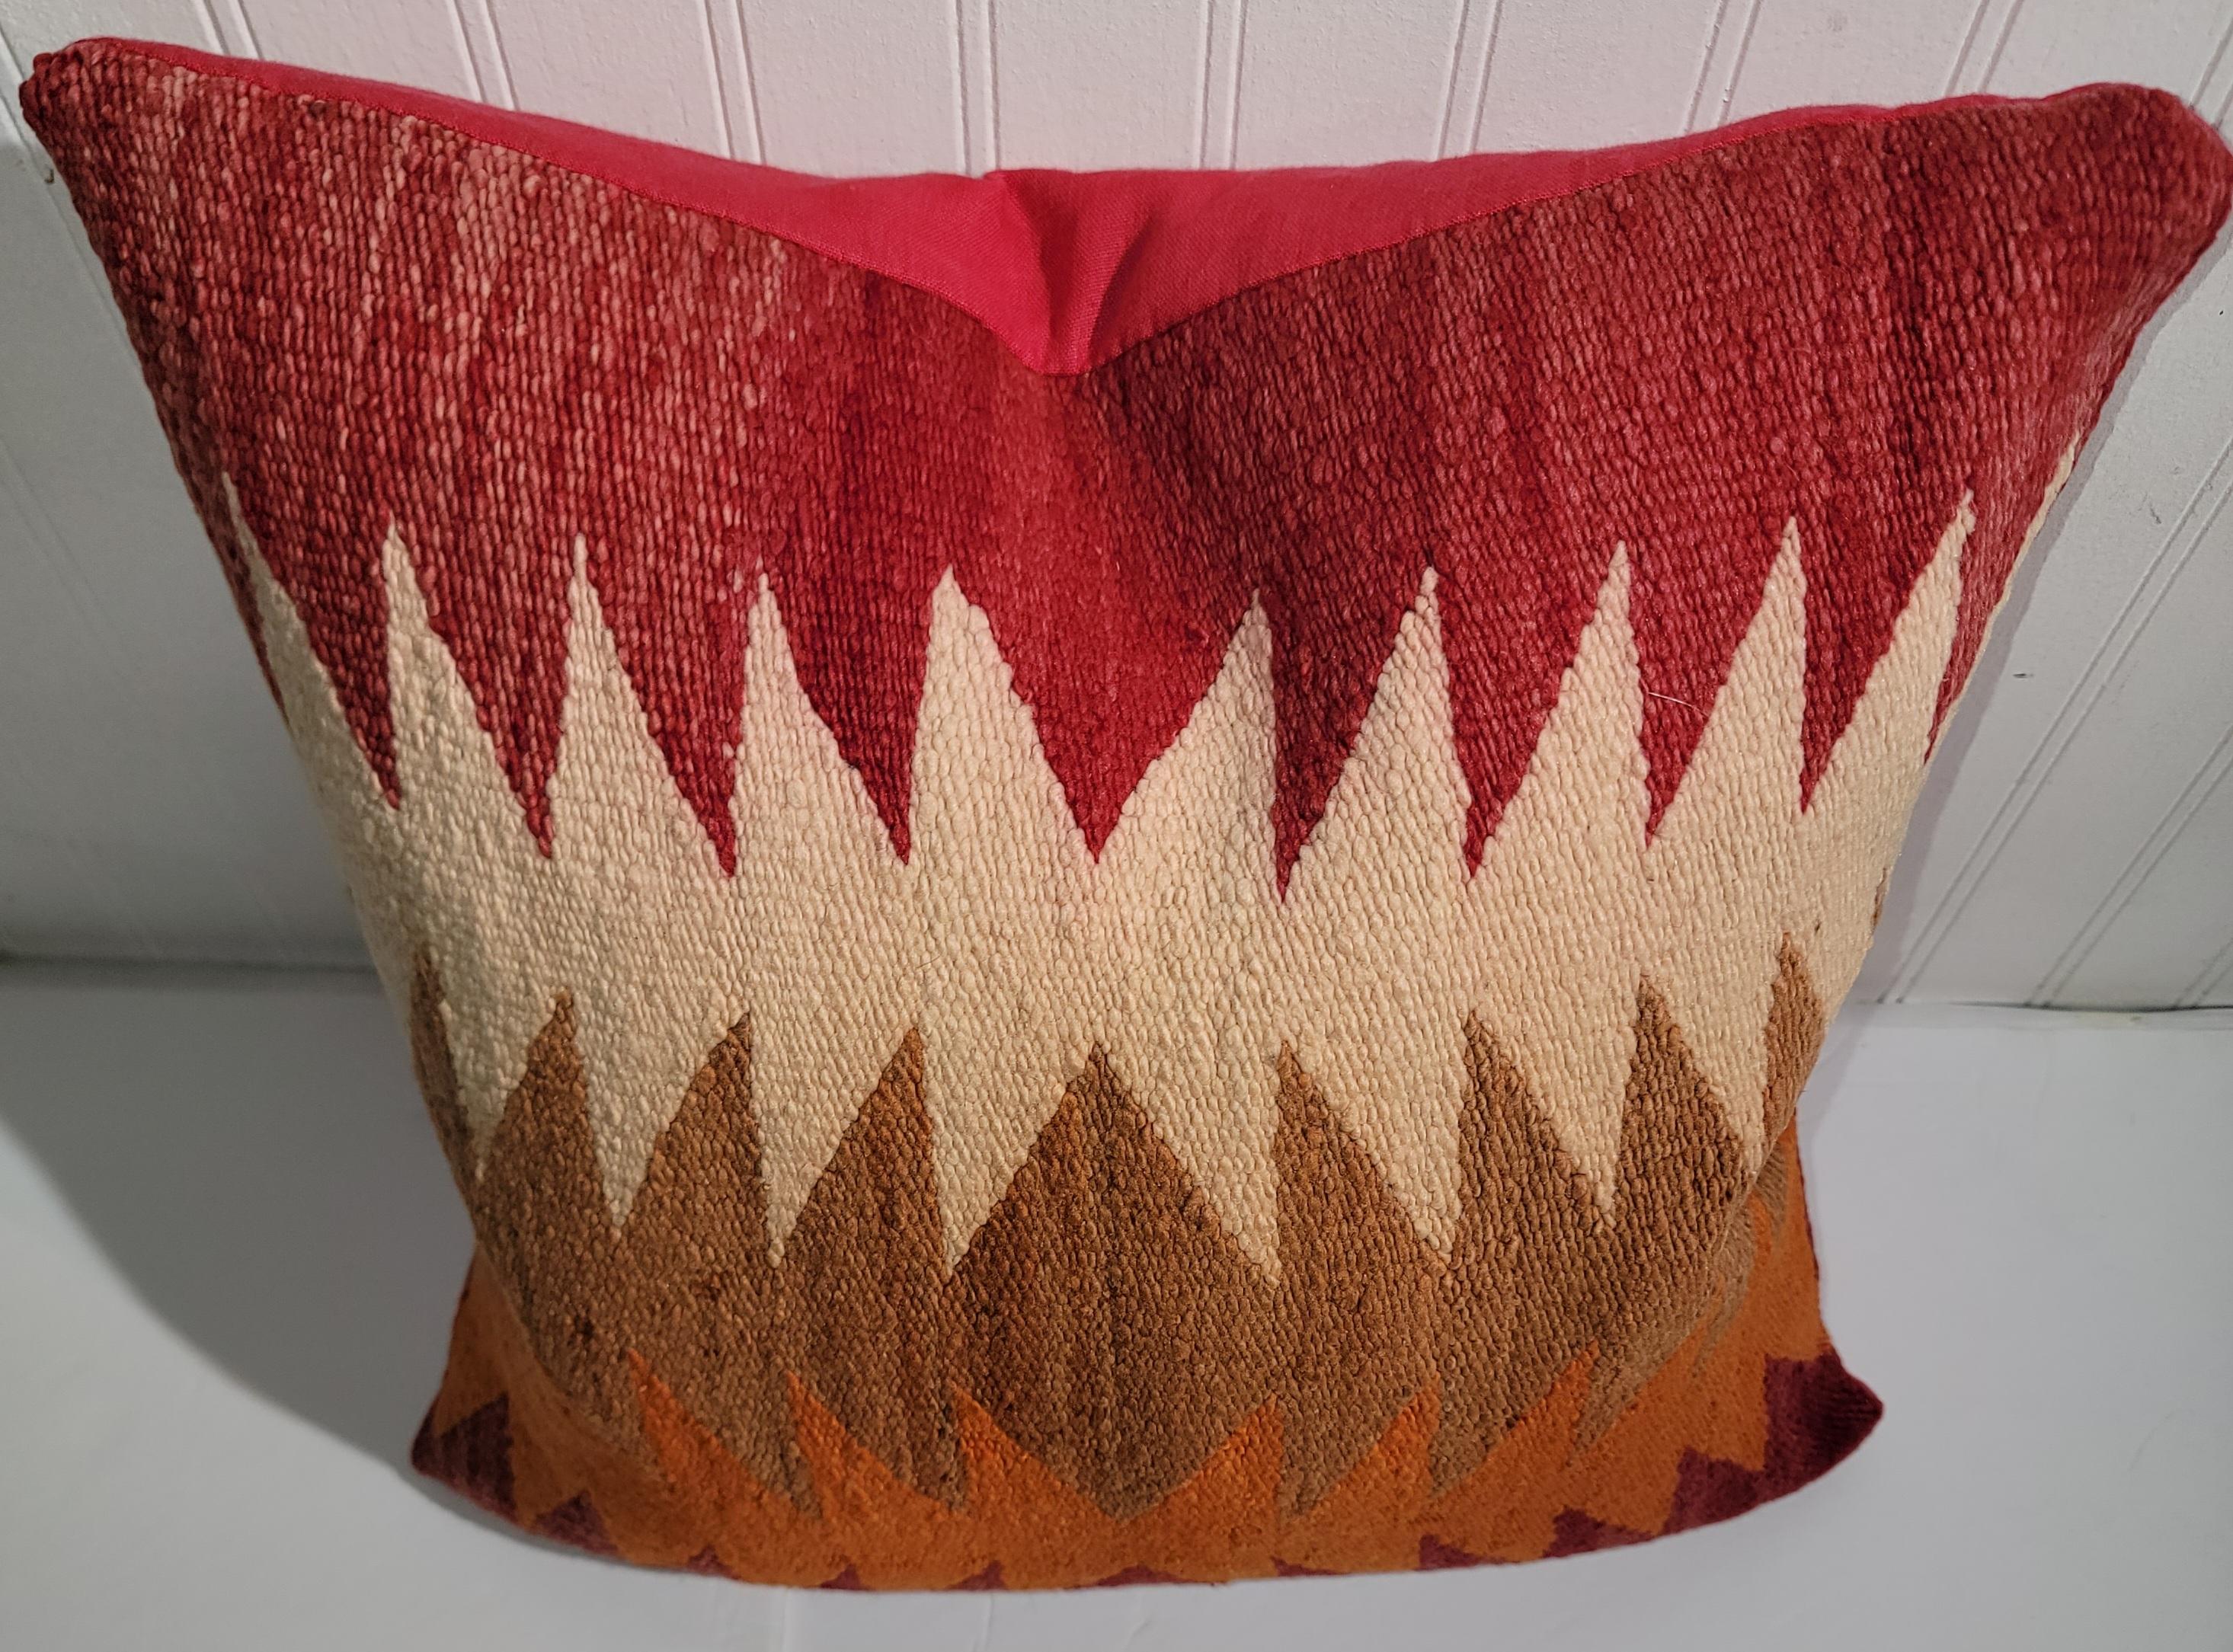 Oreiller en laine Navajo à motif de points de flamme avec support en lin rouge. Une couleur magnifique dans un motif de flamme. Des oranges et des rouges magnifiques, des blancs et des bruns. Merveilleuse conception. 